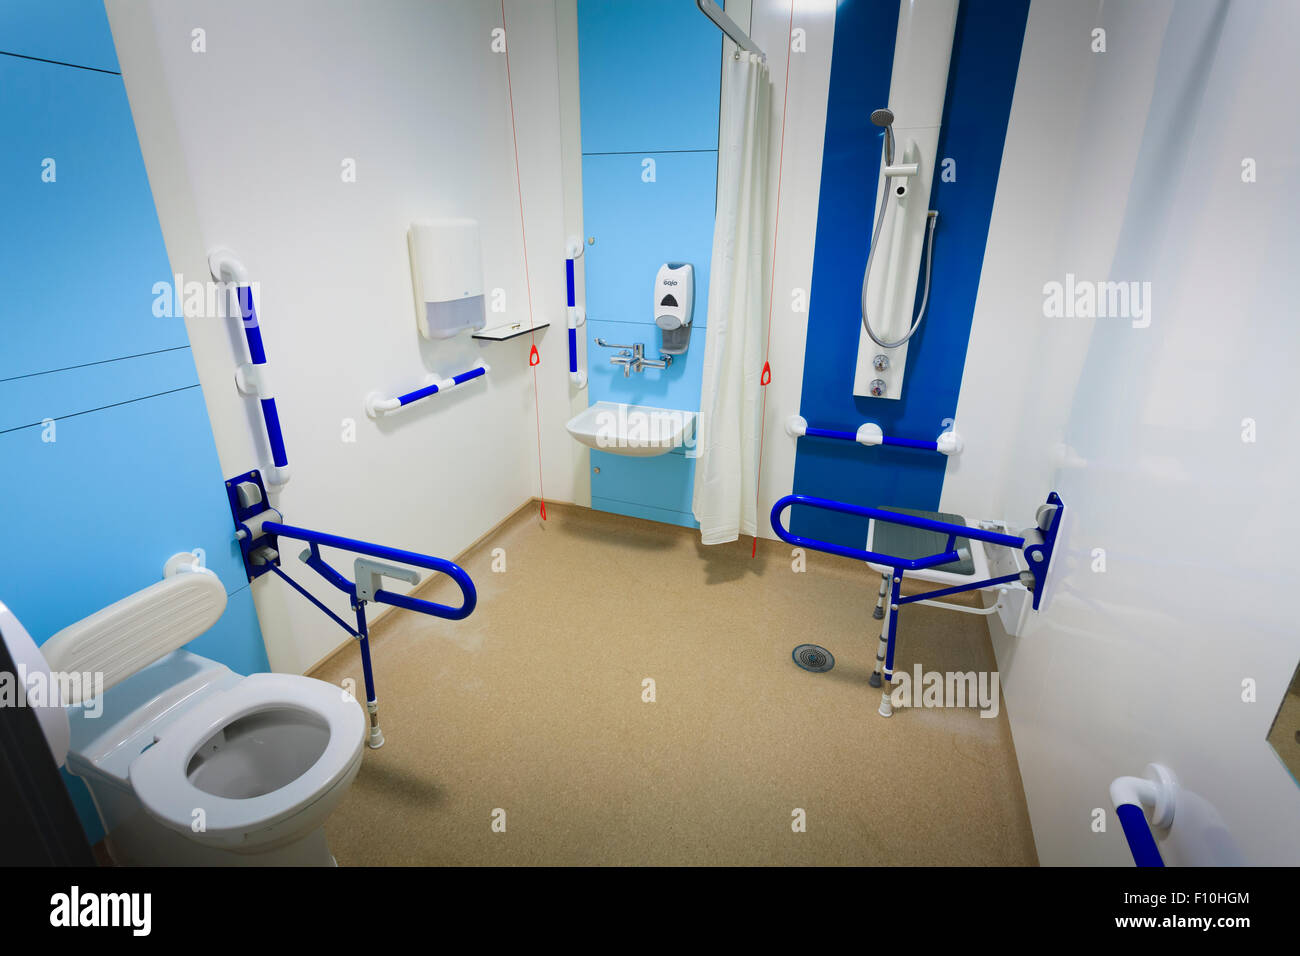 Discapacitados baño wetroom en el hospital con la asistencia bares sin gente Foto de stock